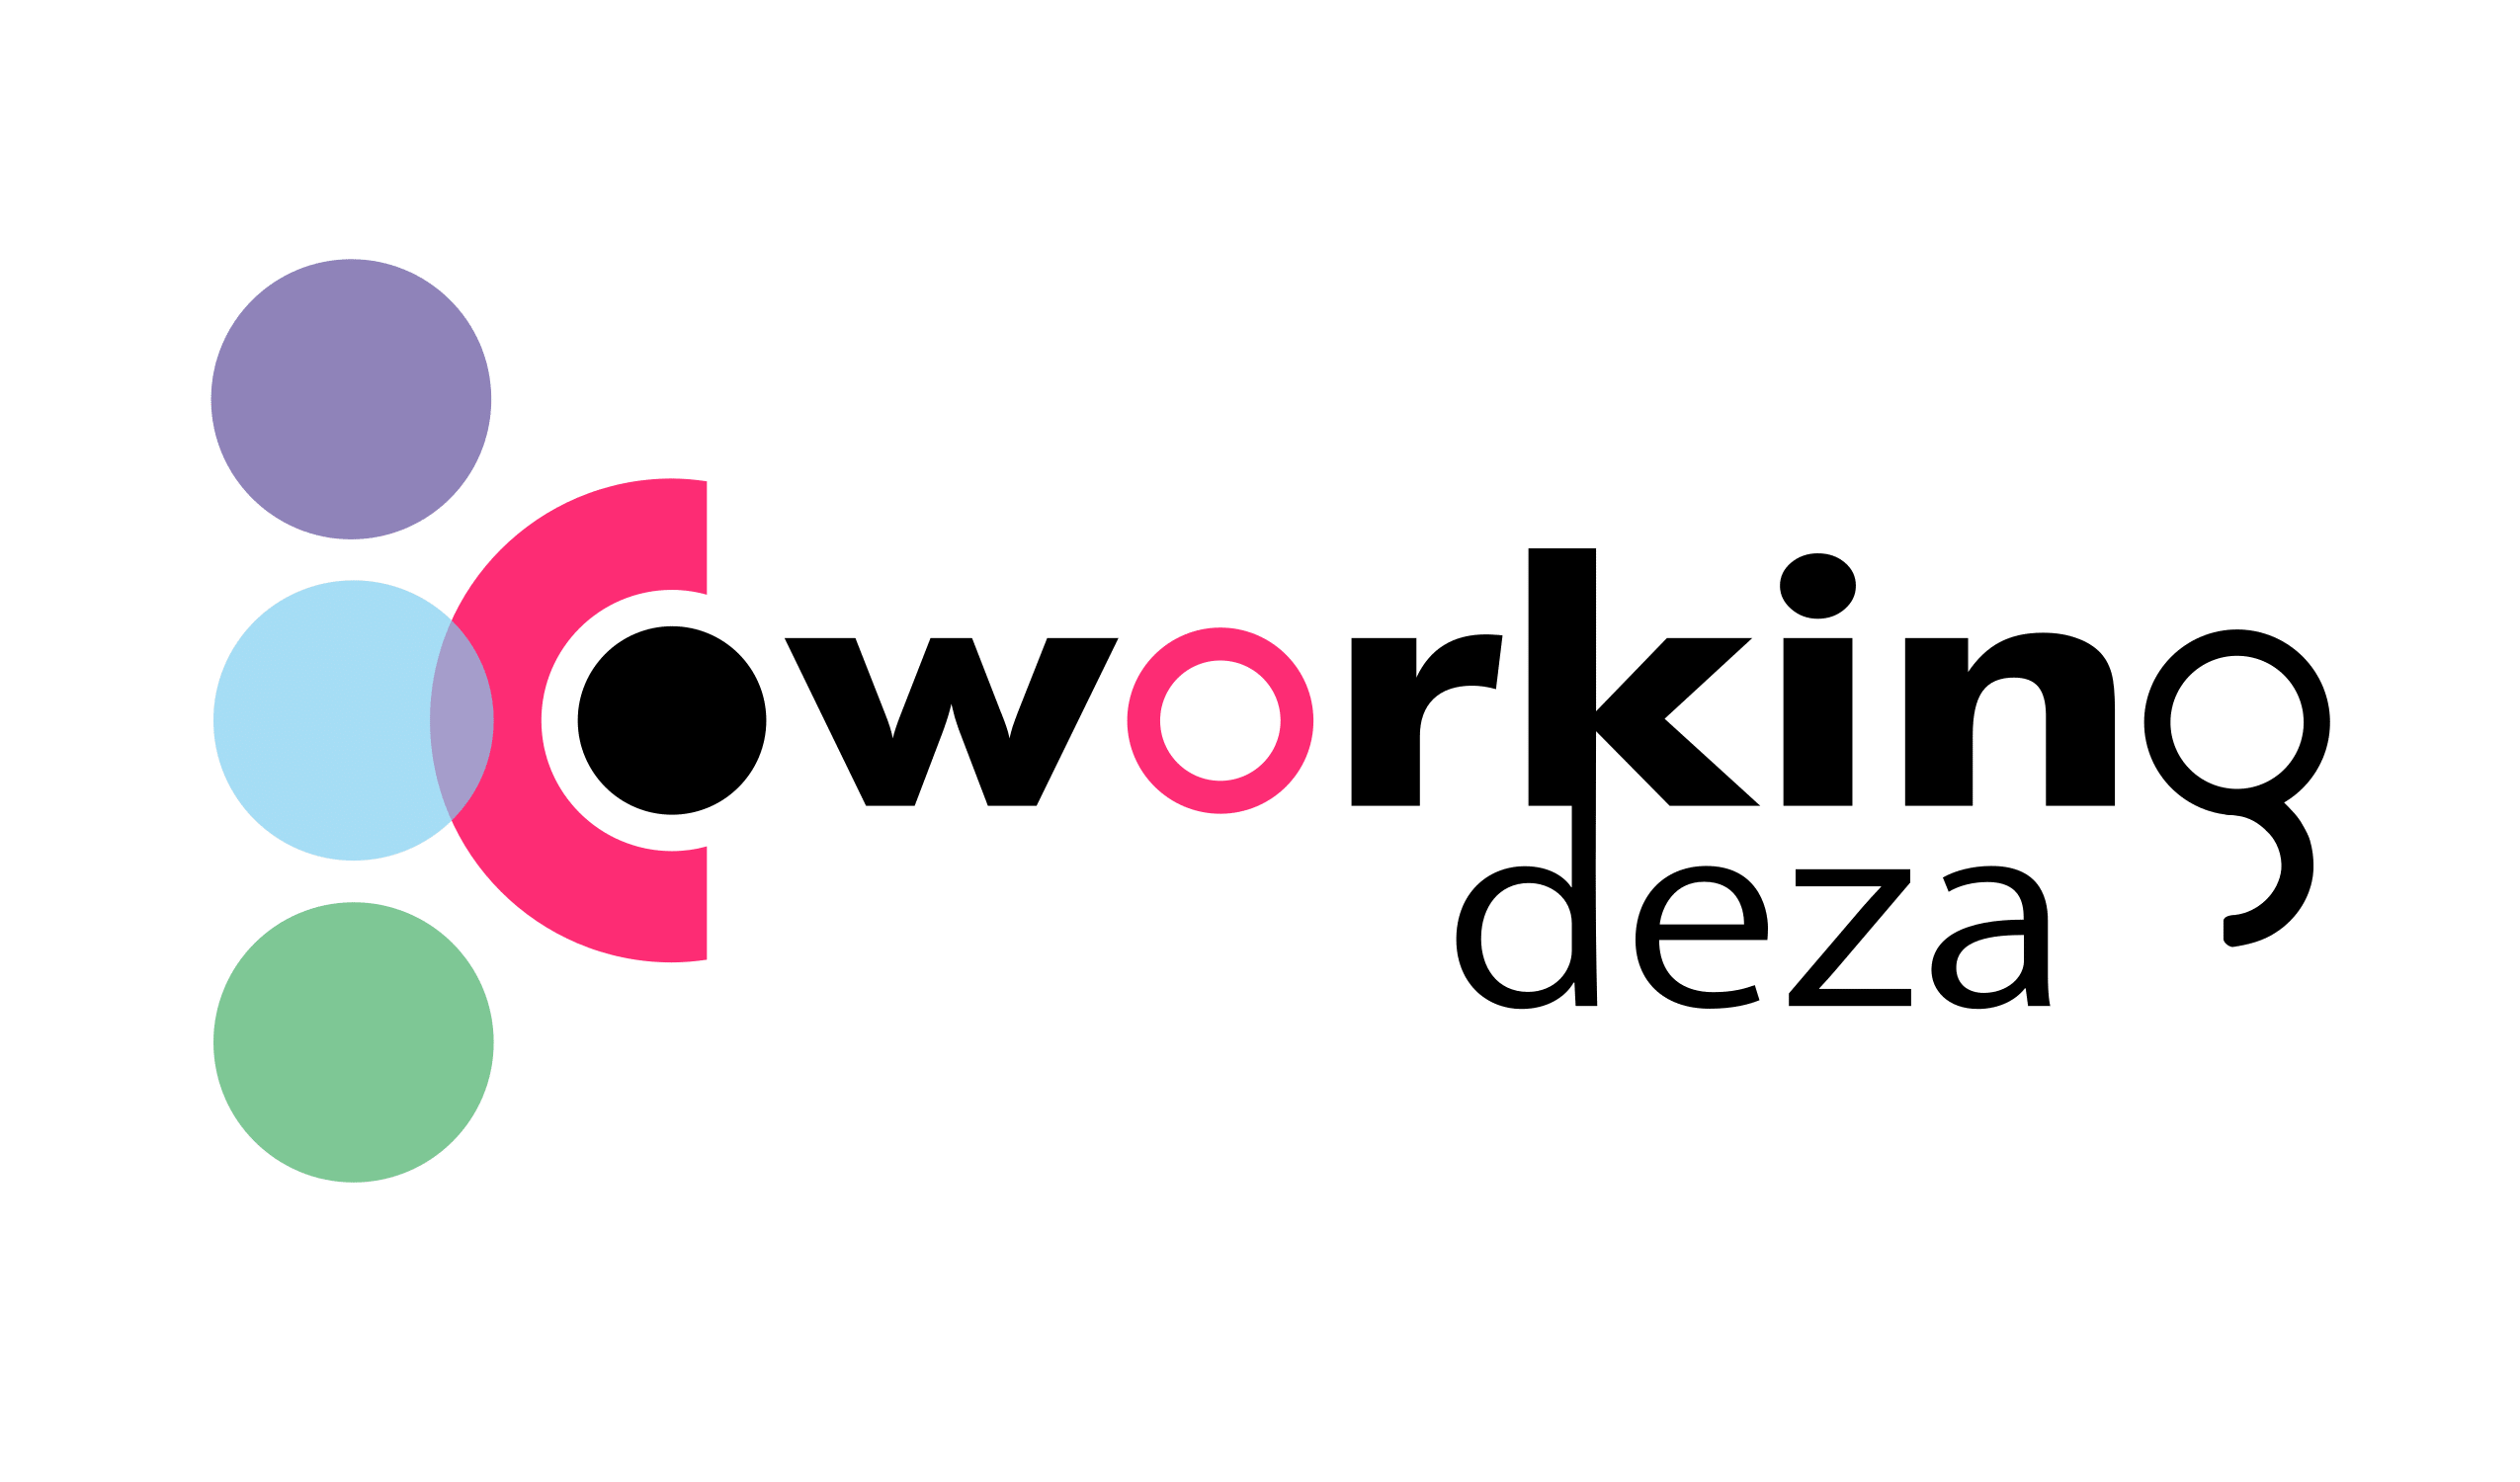 Coworking Deza